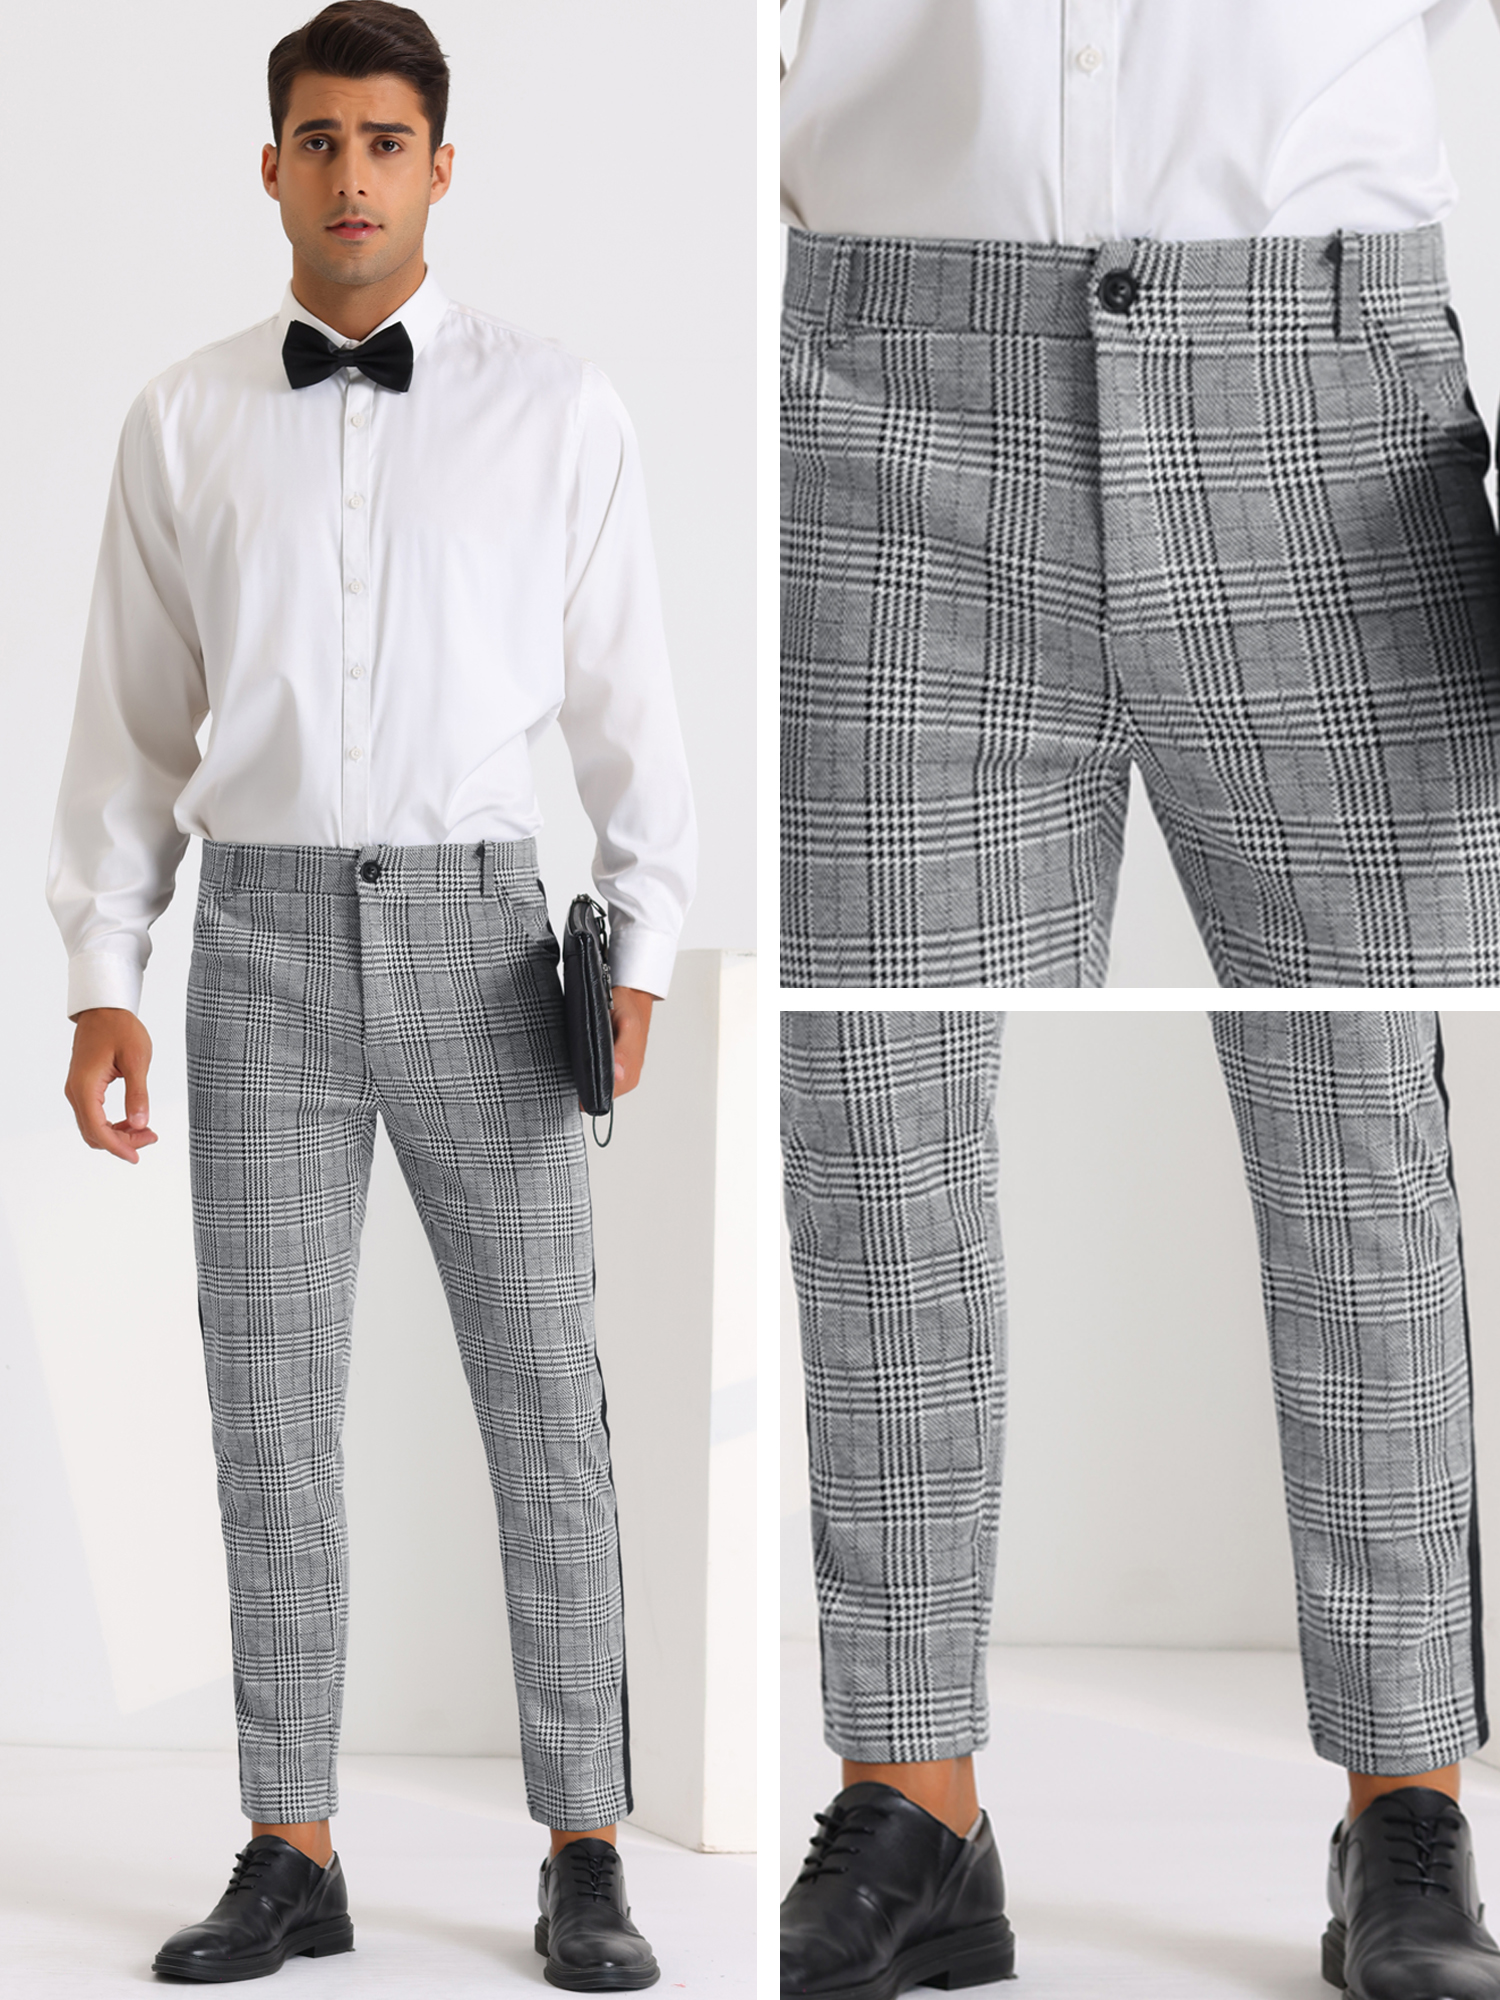 Unique Bargains Plaid Dress Pants for Men's Contrast Color Checked Flat Front Formal Pants